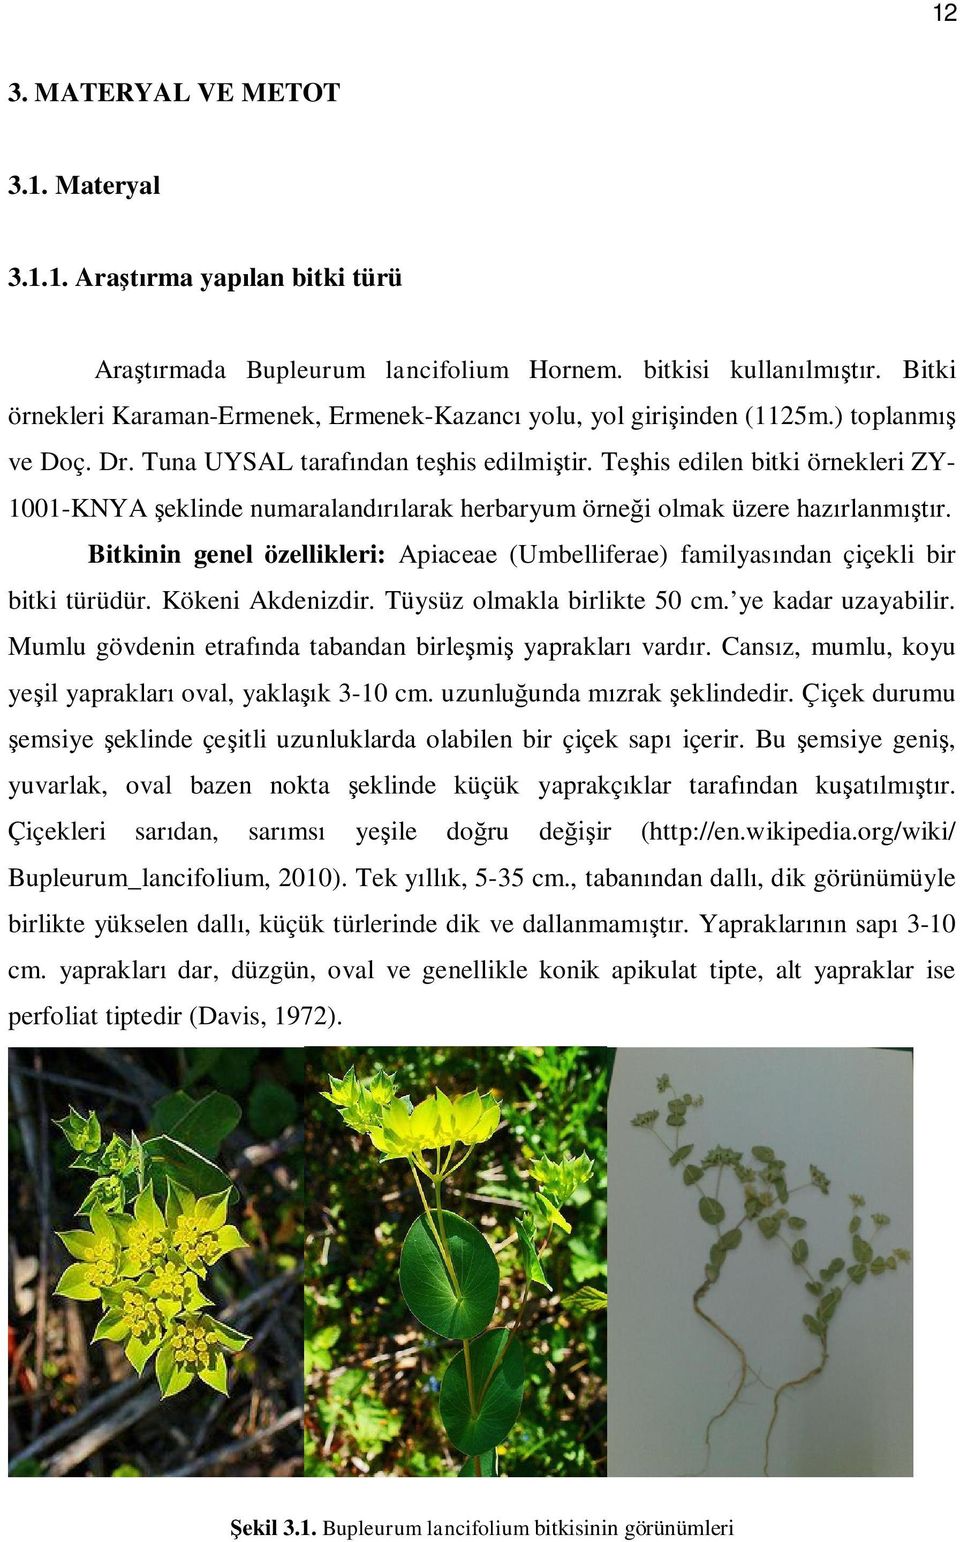 Te his edilen bitki örnekleri ZY- 1001-KNYA eklinde numaraland larak herbaryum örne i olmak üzere haz rlanm r.